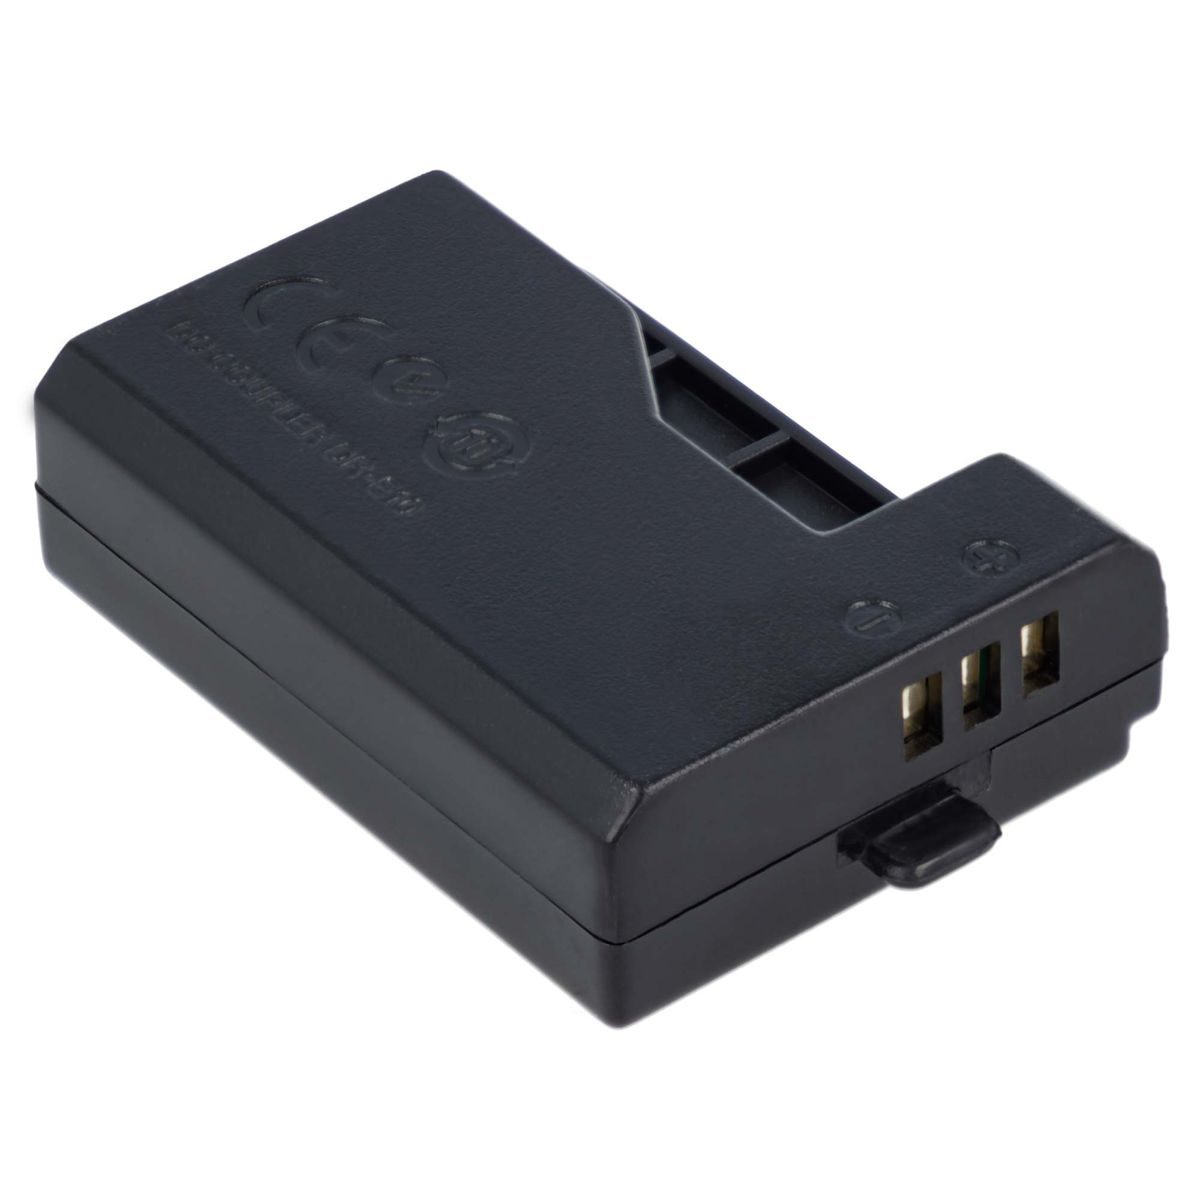 AKKU-KING USB Adapter + DR-E10 Kuppler keine Canon, mit Canon kompatibel Ladegerät Angabe